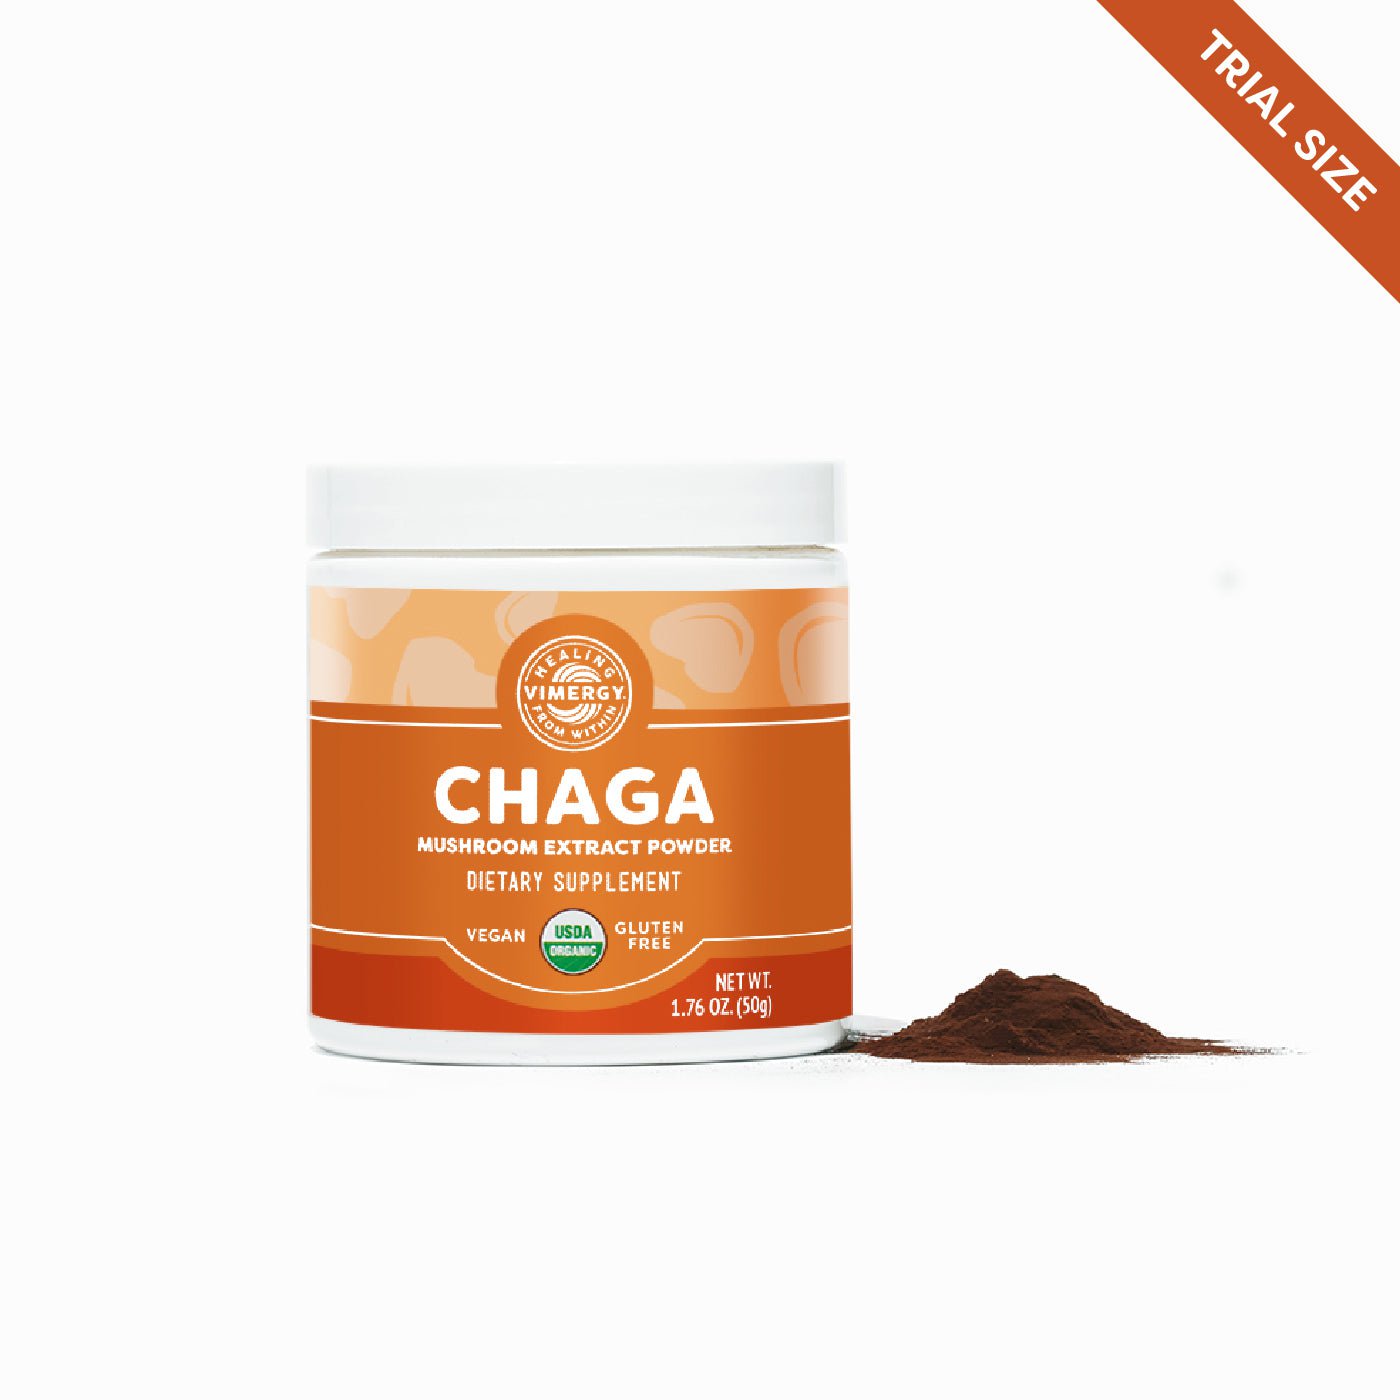 Senzu Health Chocolate Collagen Powder